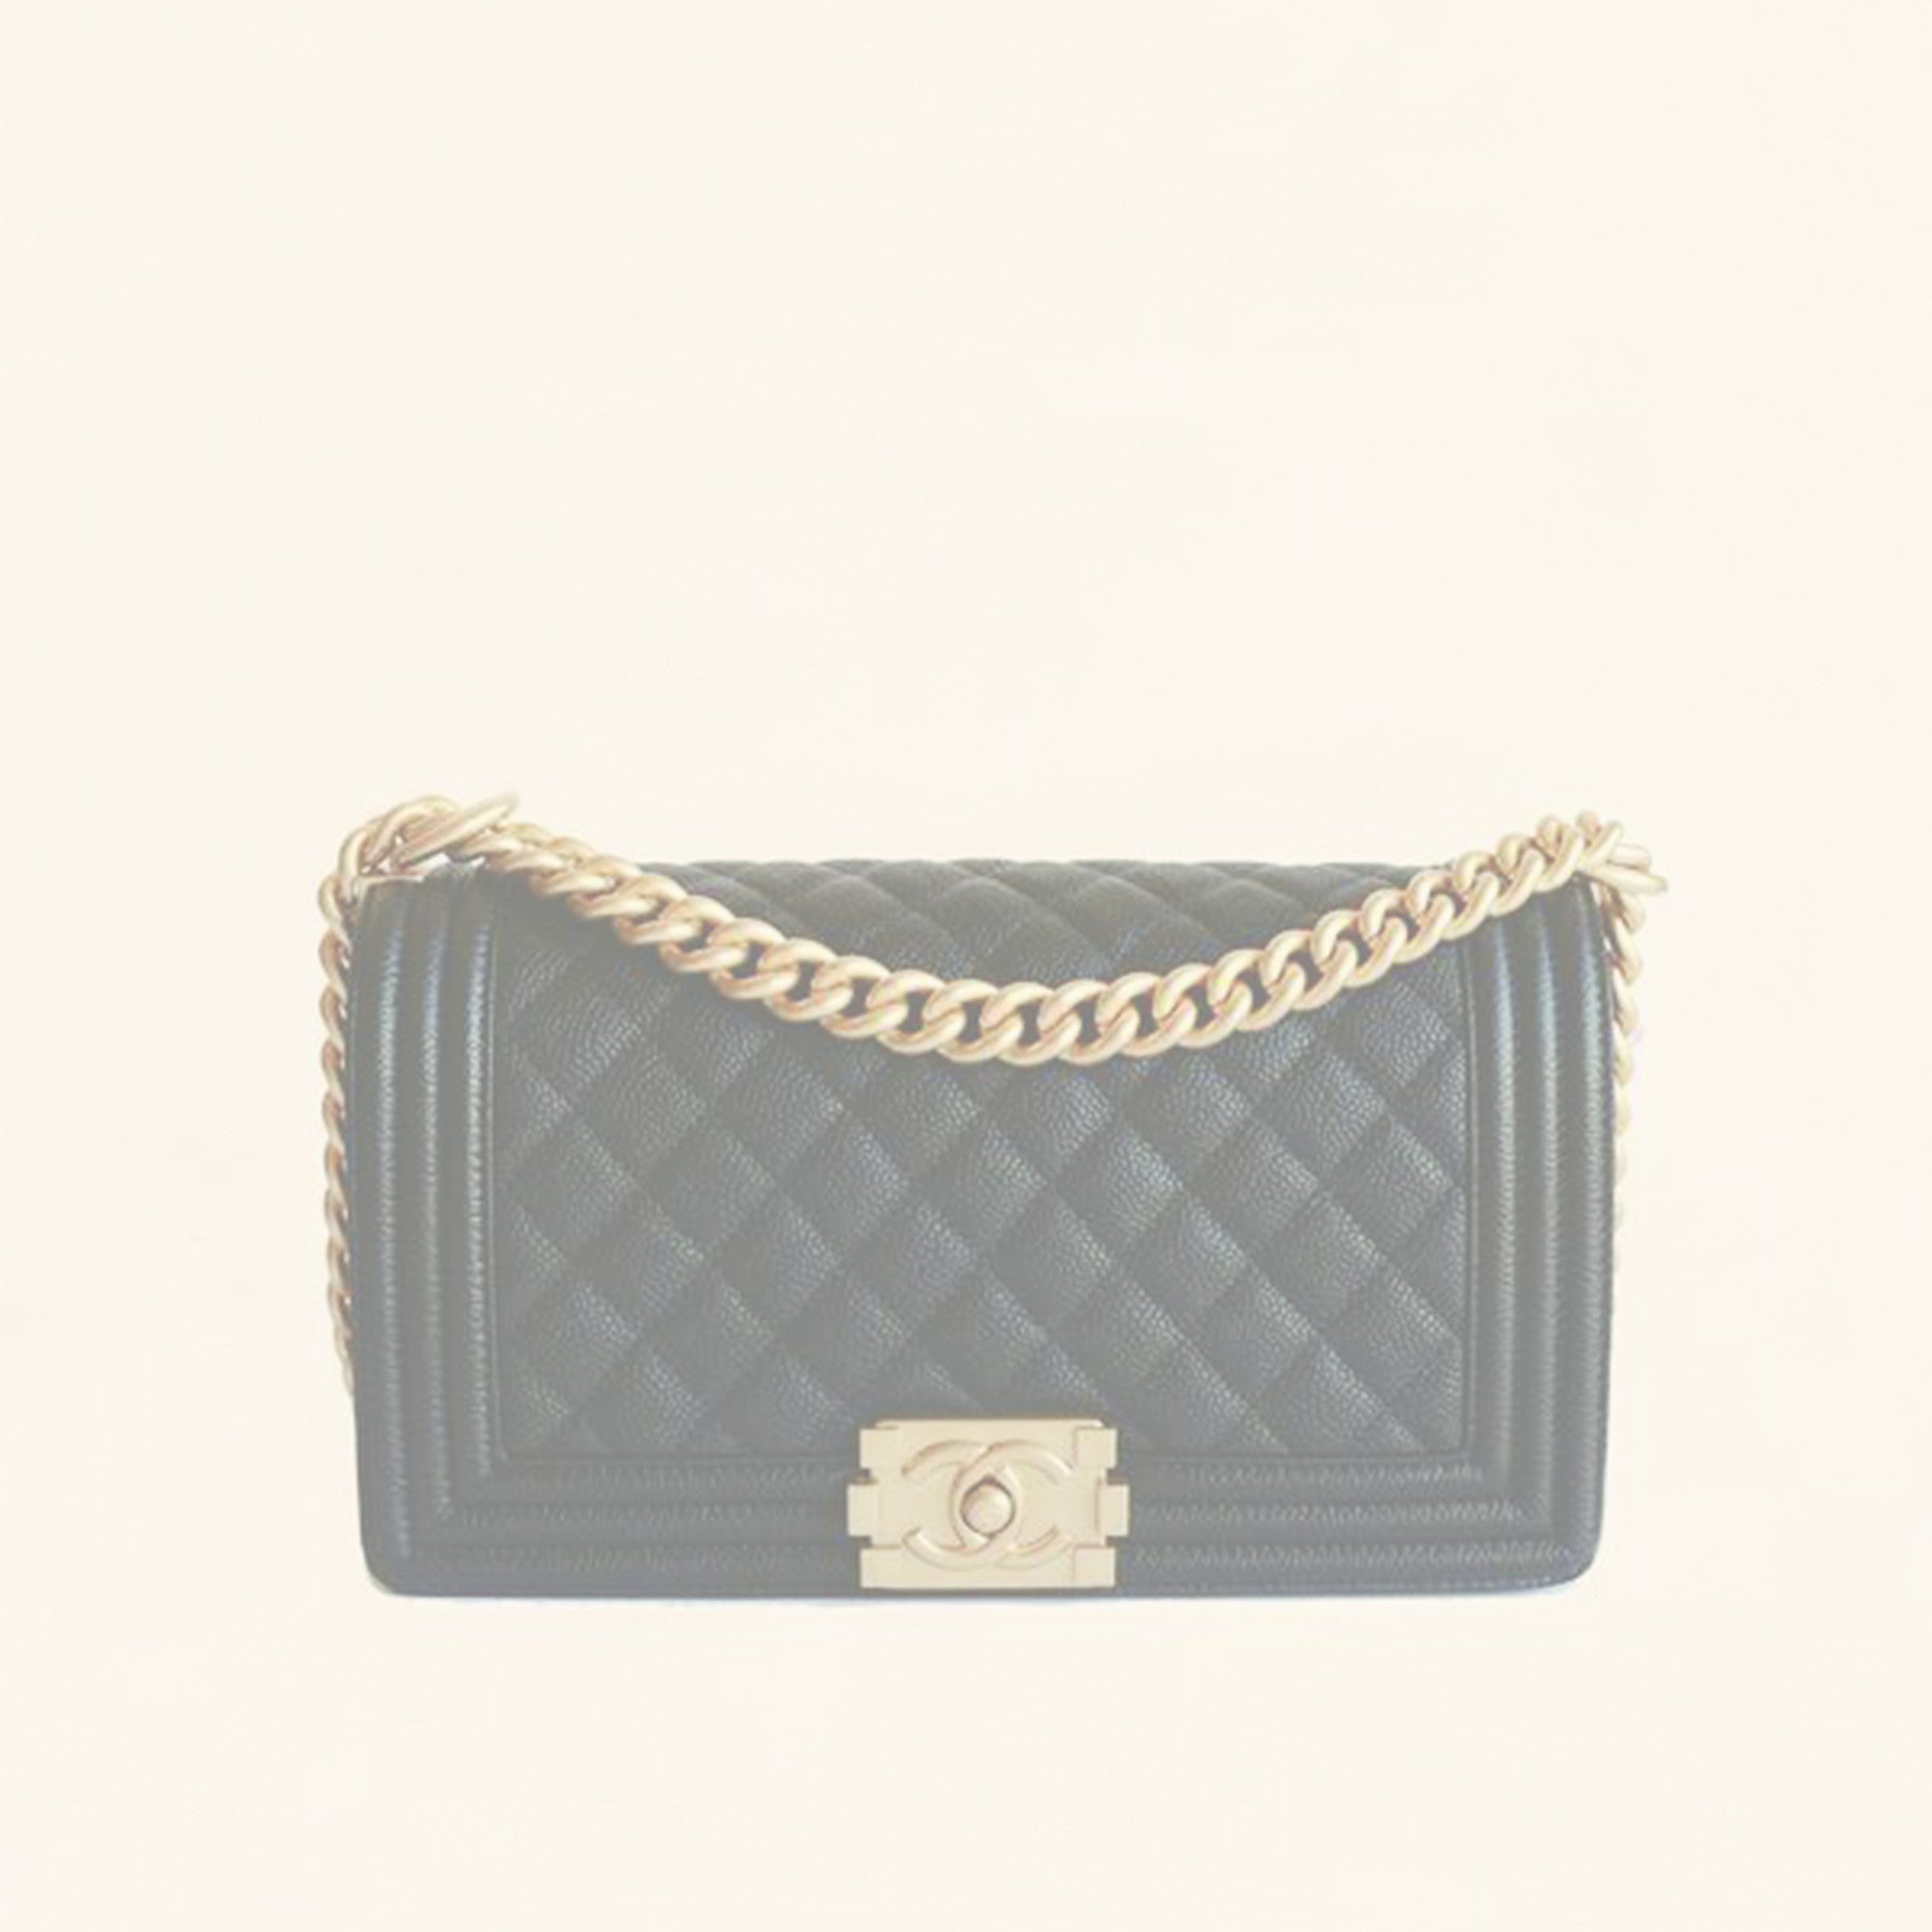 Chanel | Caviar Leather Boy Flap Bag | Old Medium